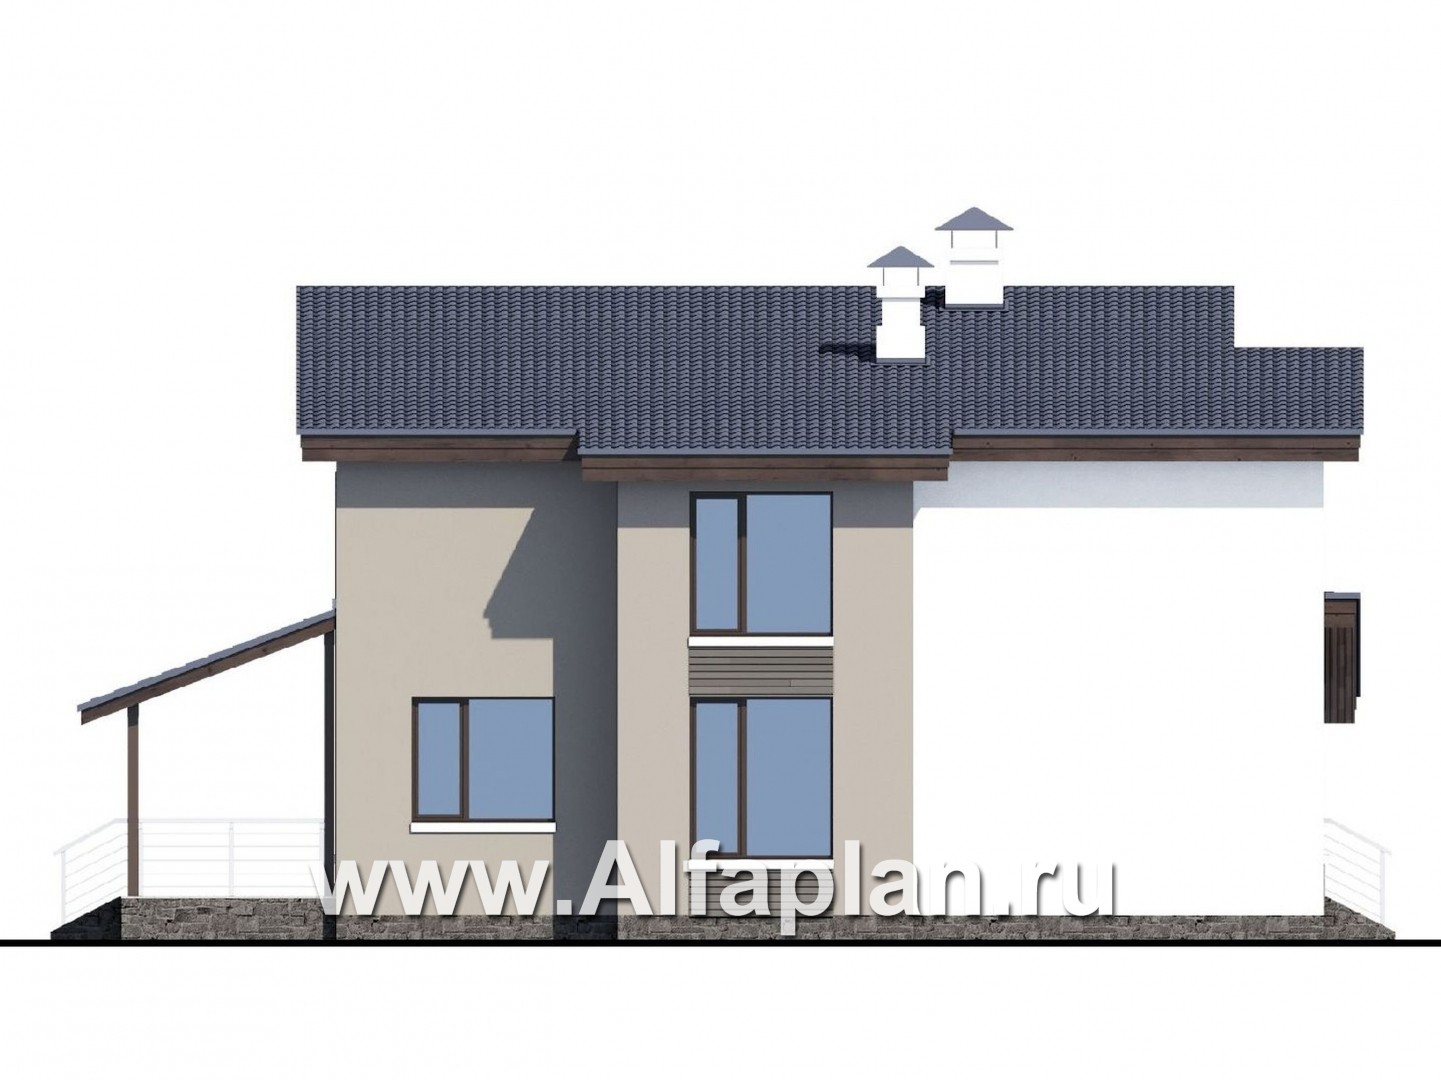 «Борей» - проект двухэтажного дома с террасой, планировка с кабинетом на 1 эт, в современном стиле с односкатной крышей - фасад дома